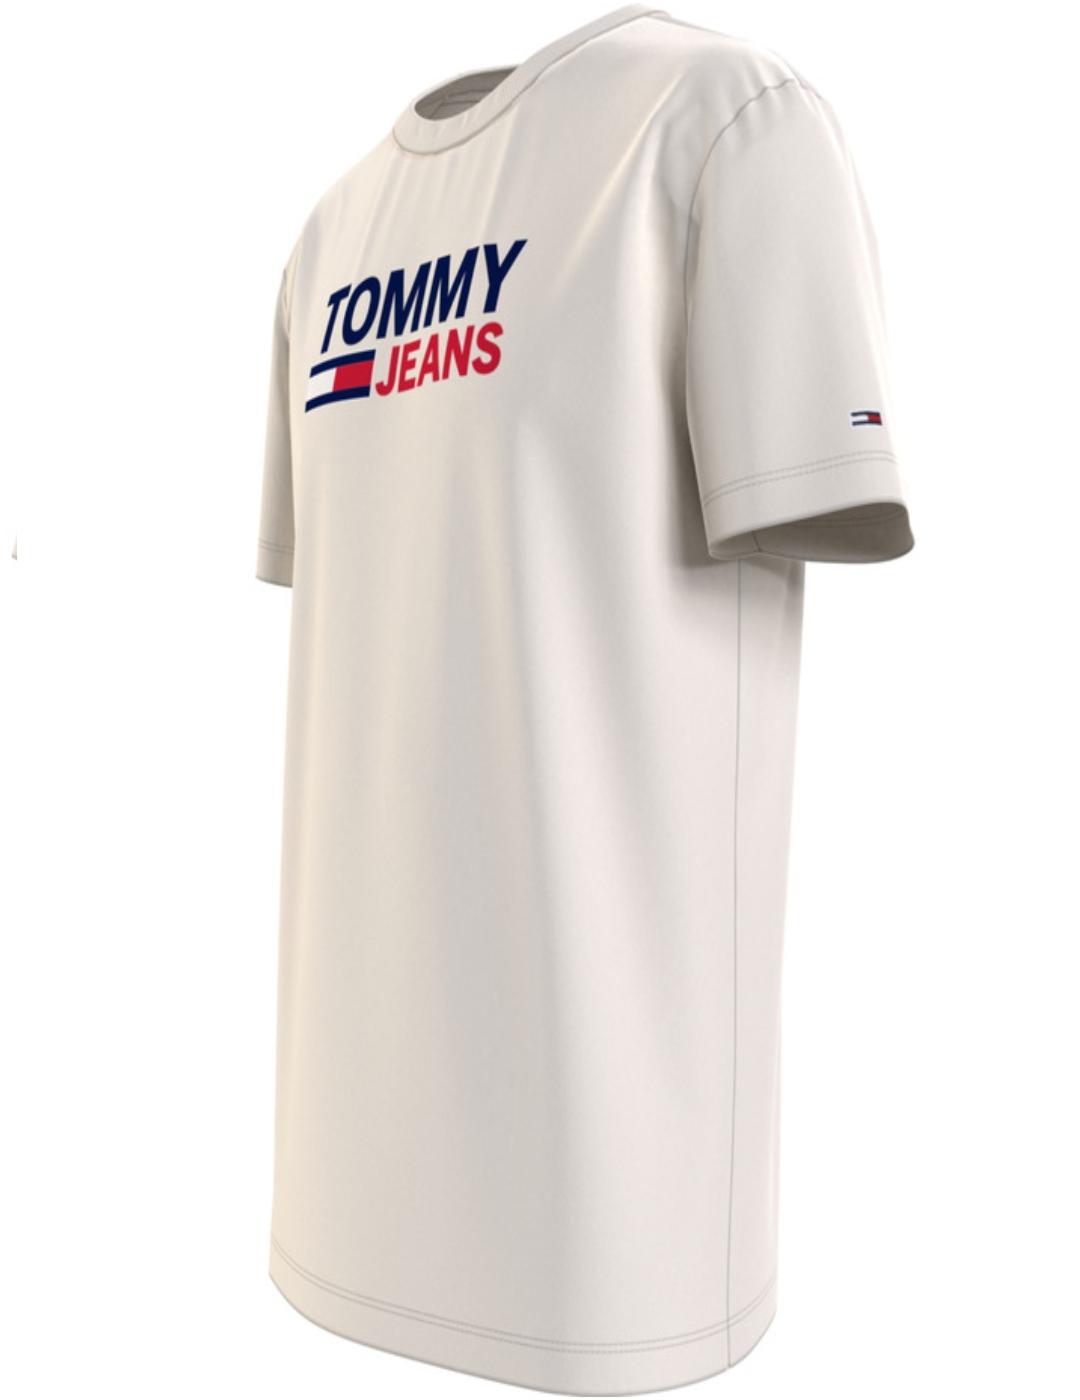 Camiseta Tommy Jeans blanca de hombre-a